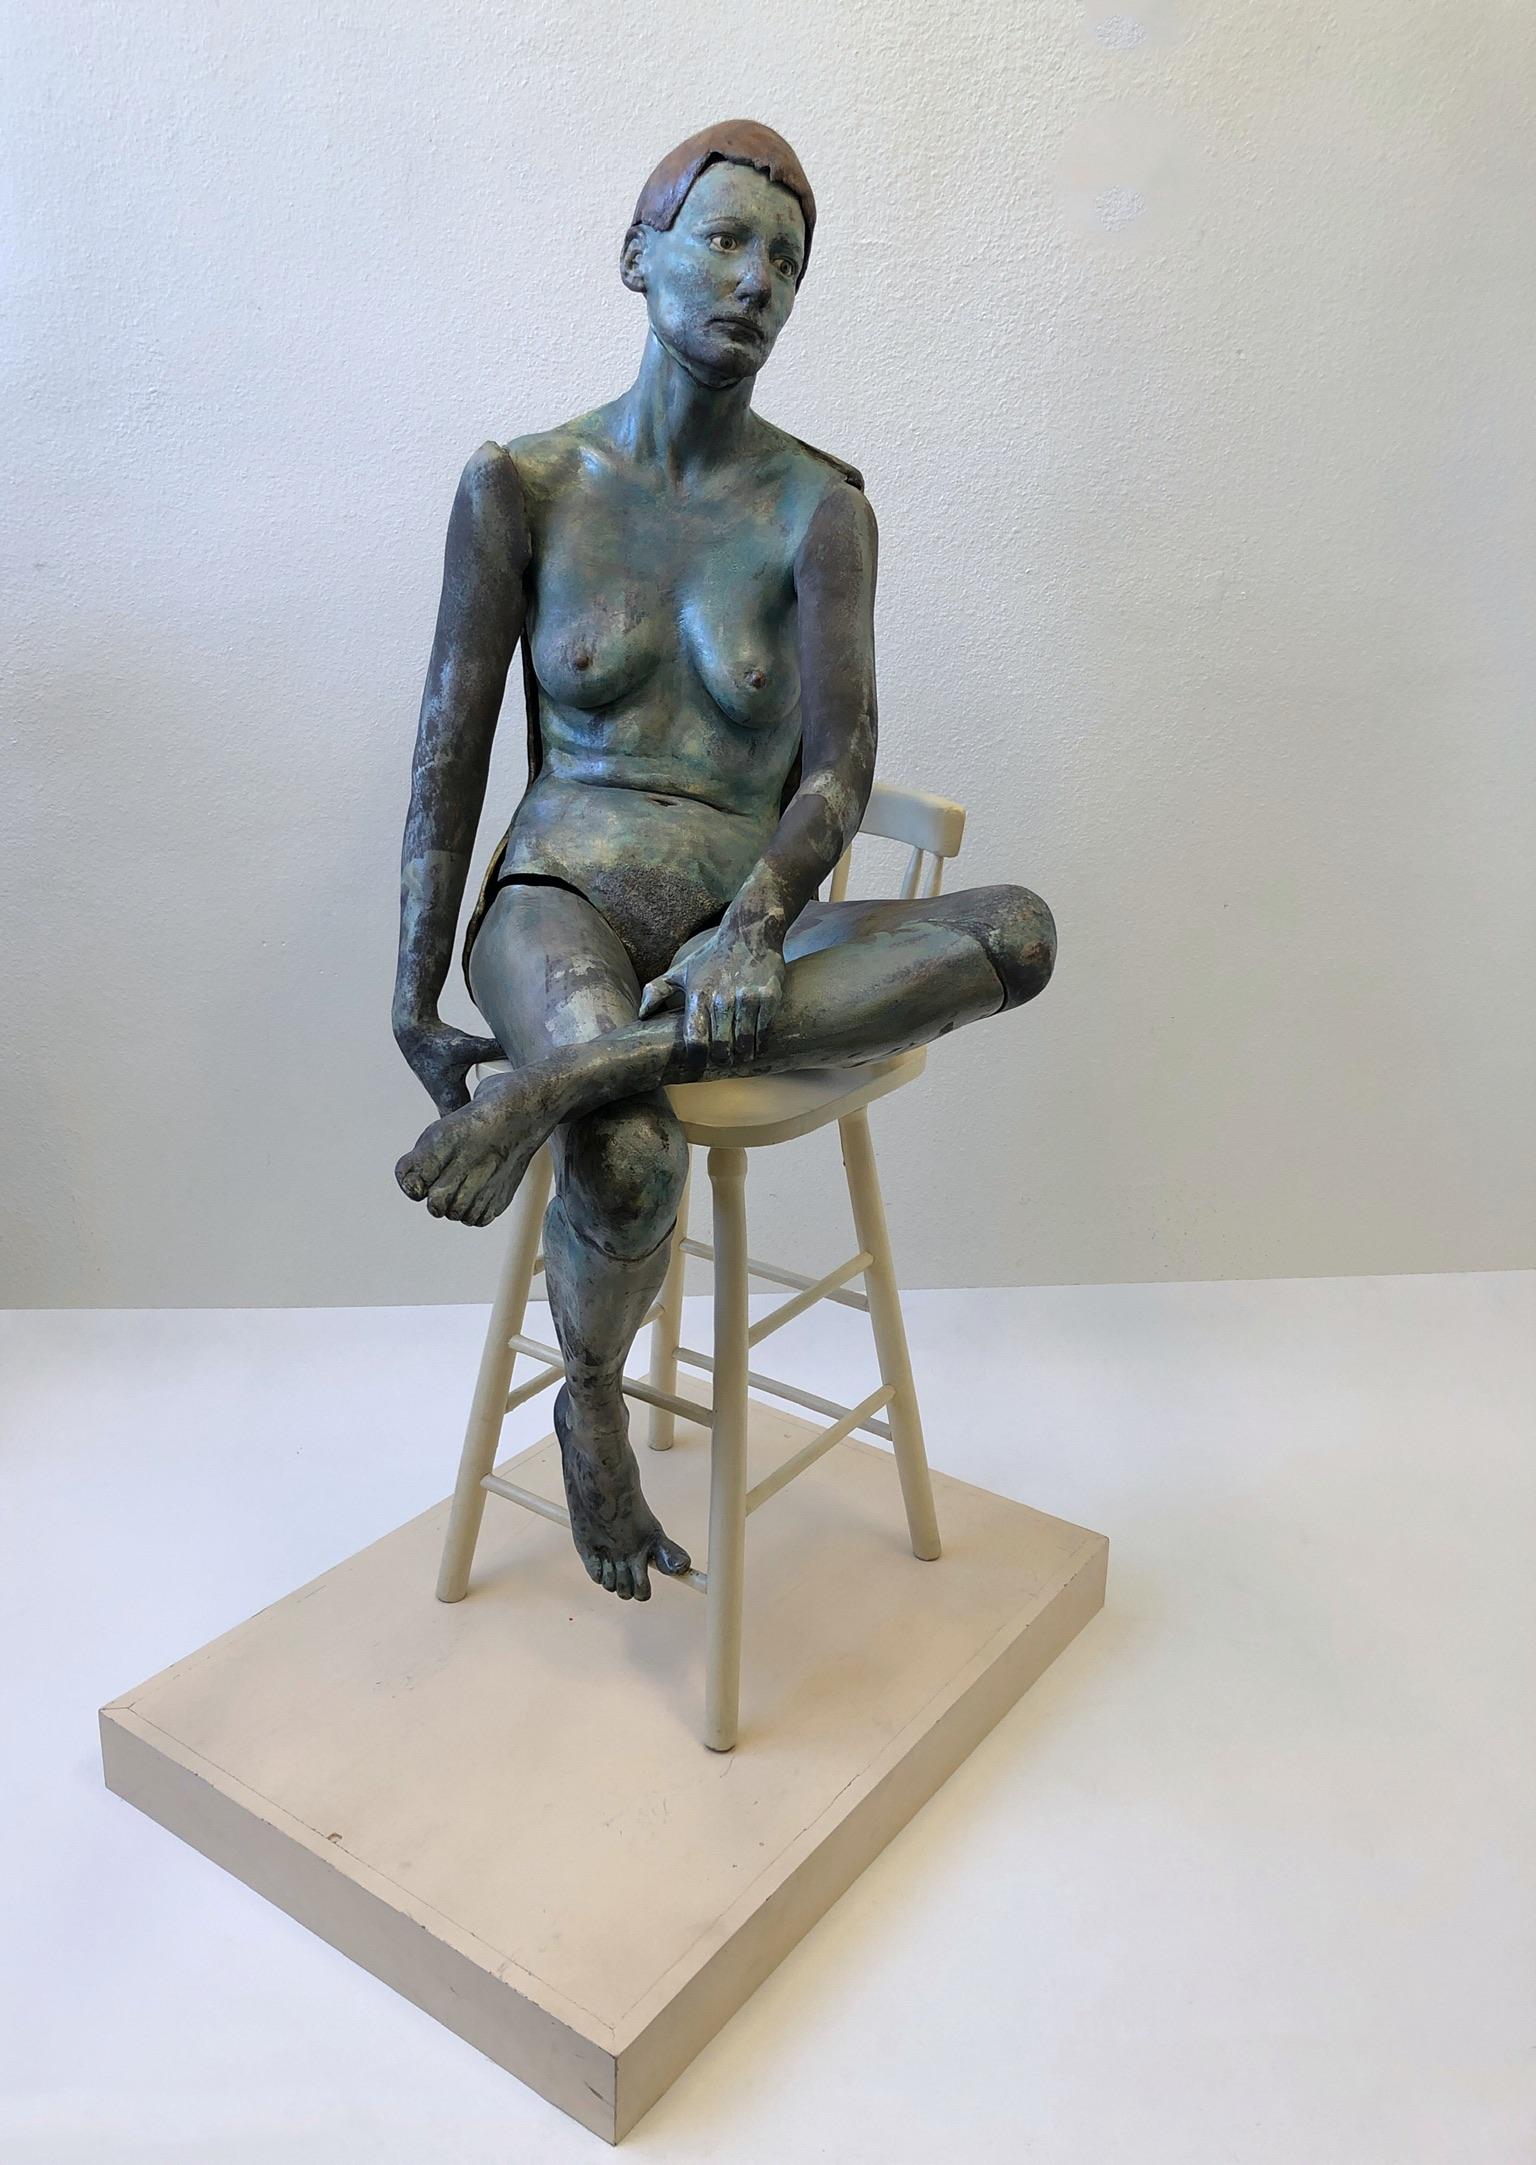 Eine spektakuläre weibliche Aktskulptur aus Raku-Keramik aus den 1980er Jahren von Eva Stettner. Die weibliche Skulptur besteht aus Keramik, die im Niedrigbrandverfahren glasiert wurde, der Stuhl aus lackiertem Holz. Die beiden Arme und ein Bein